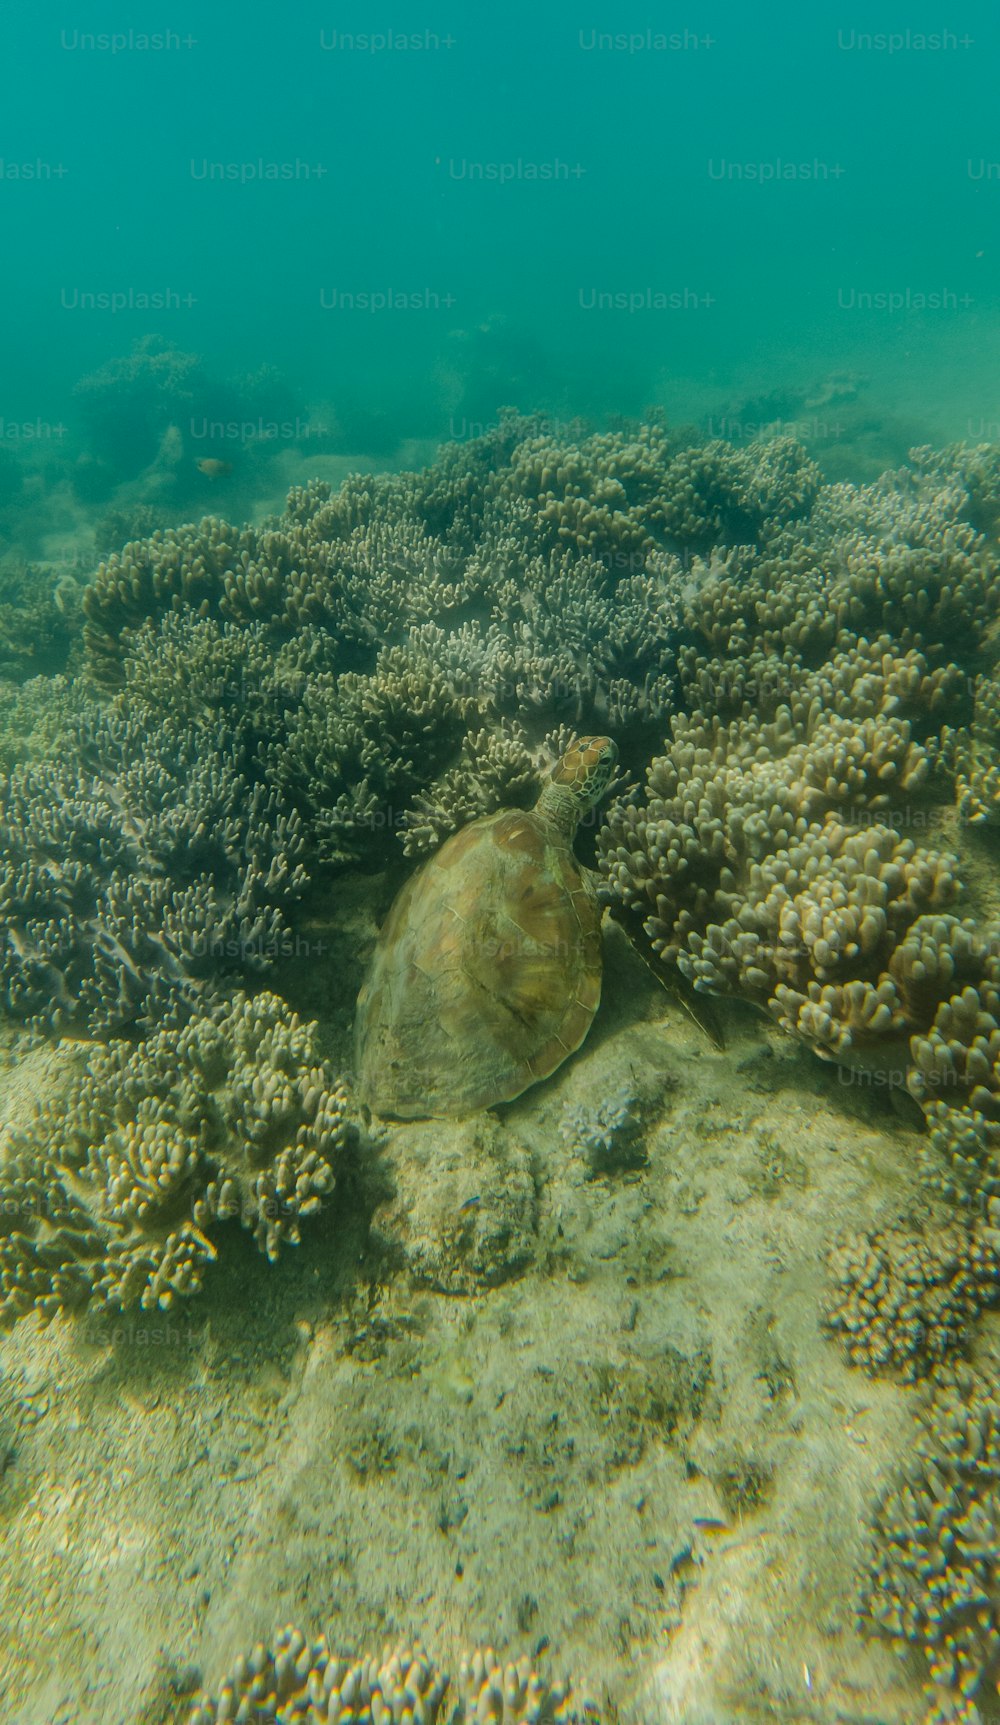 Una tortuga nadando en el océano